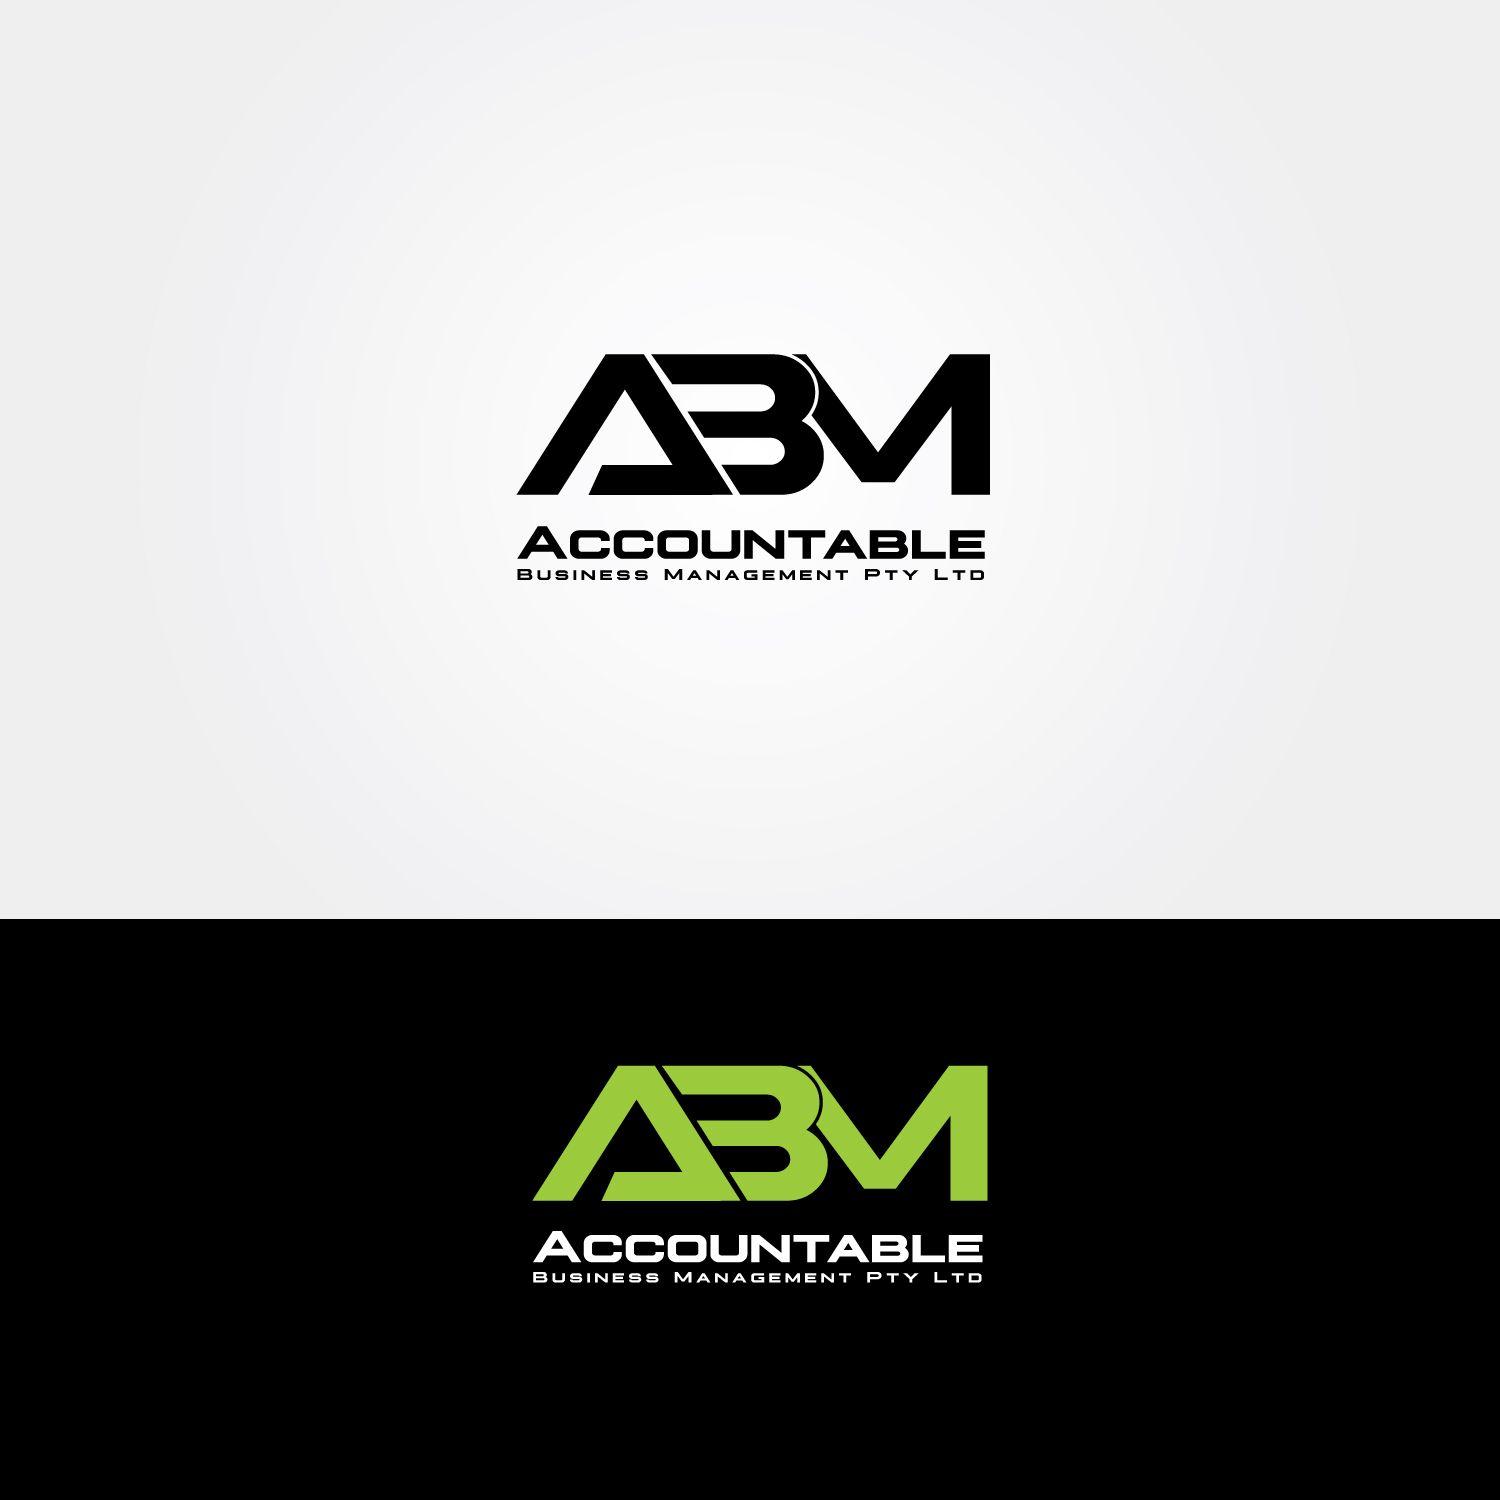 ABM Logo - Elegant, Serious Logo Design for ABM Accountable Business Management ...